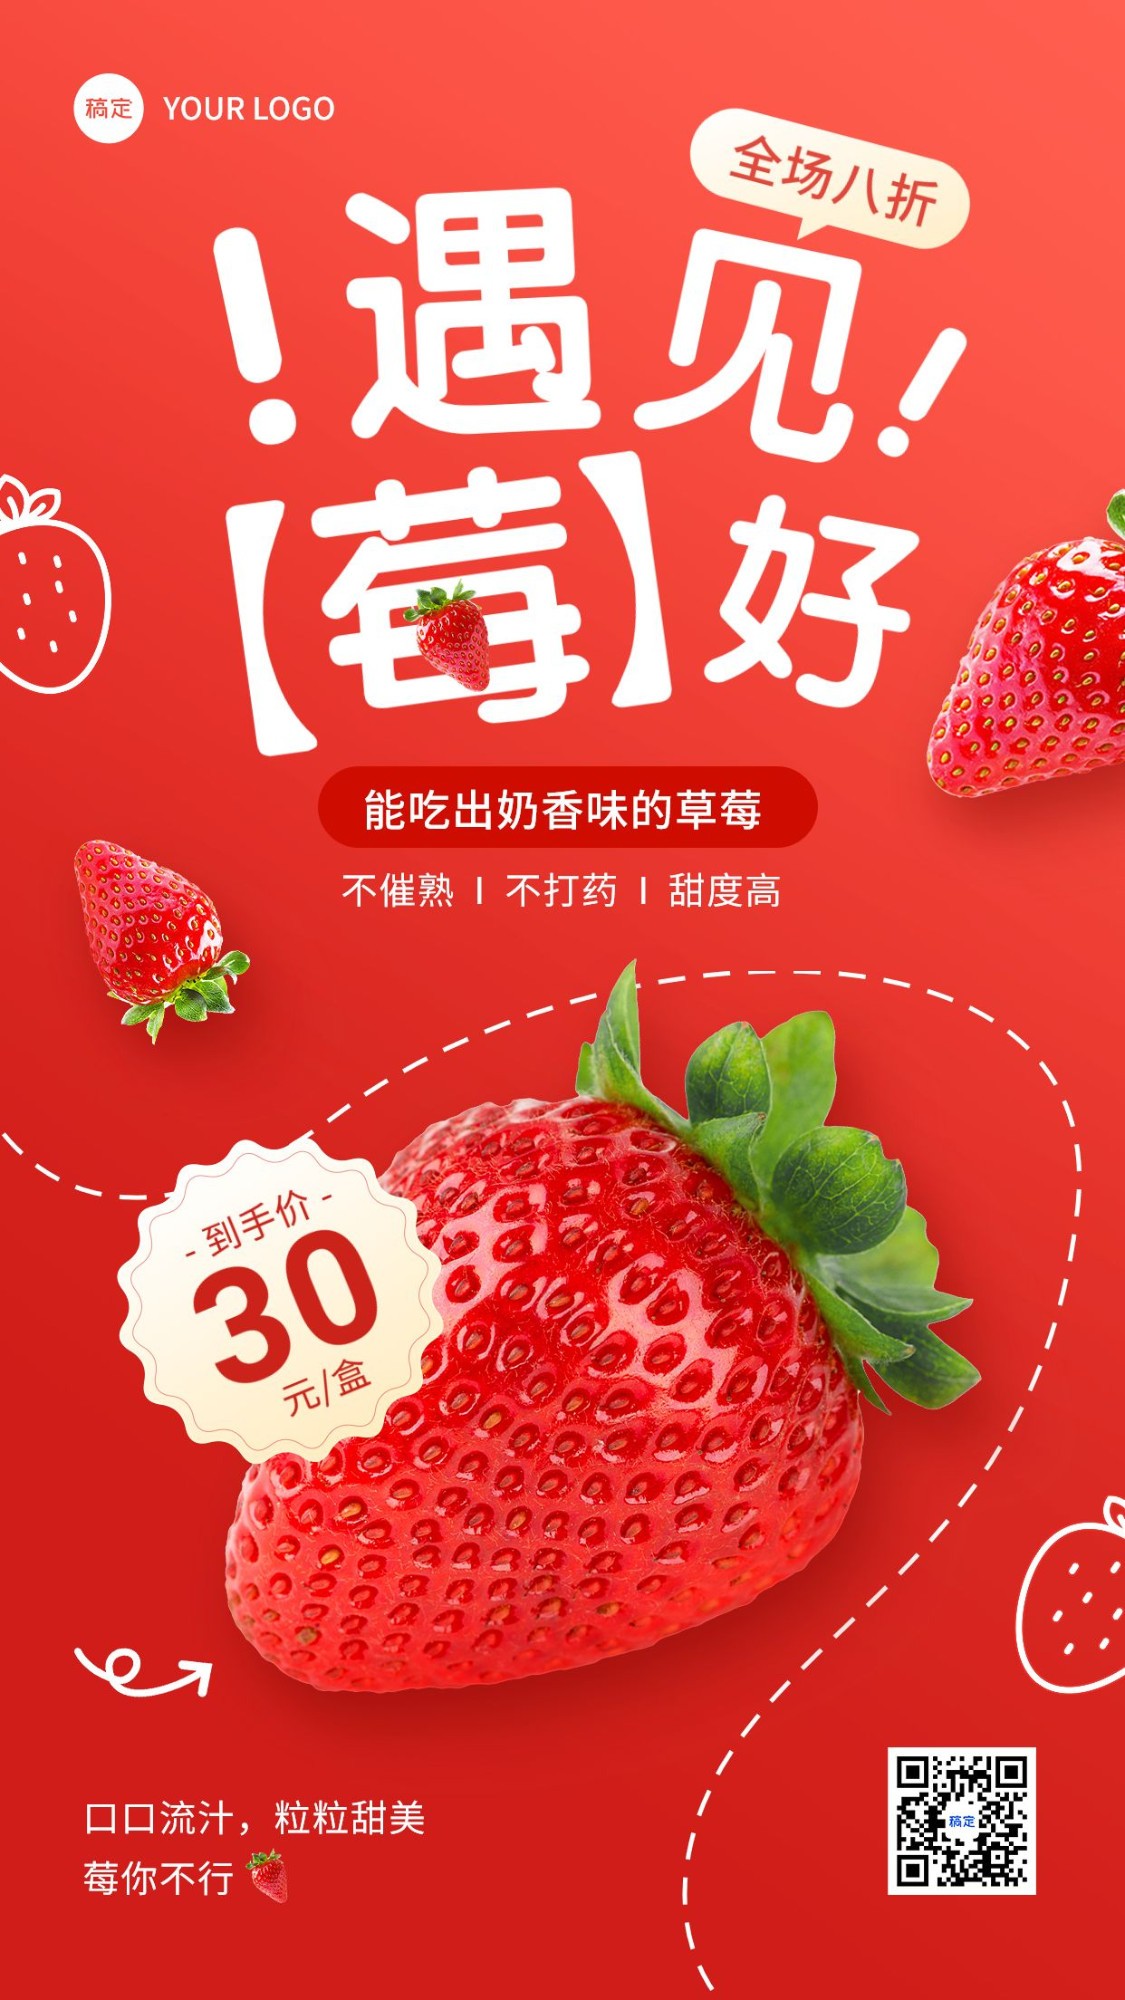 食品生鲜草莓营销产品展示打折促销手机海报预览效果